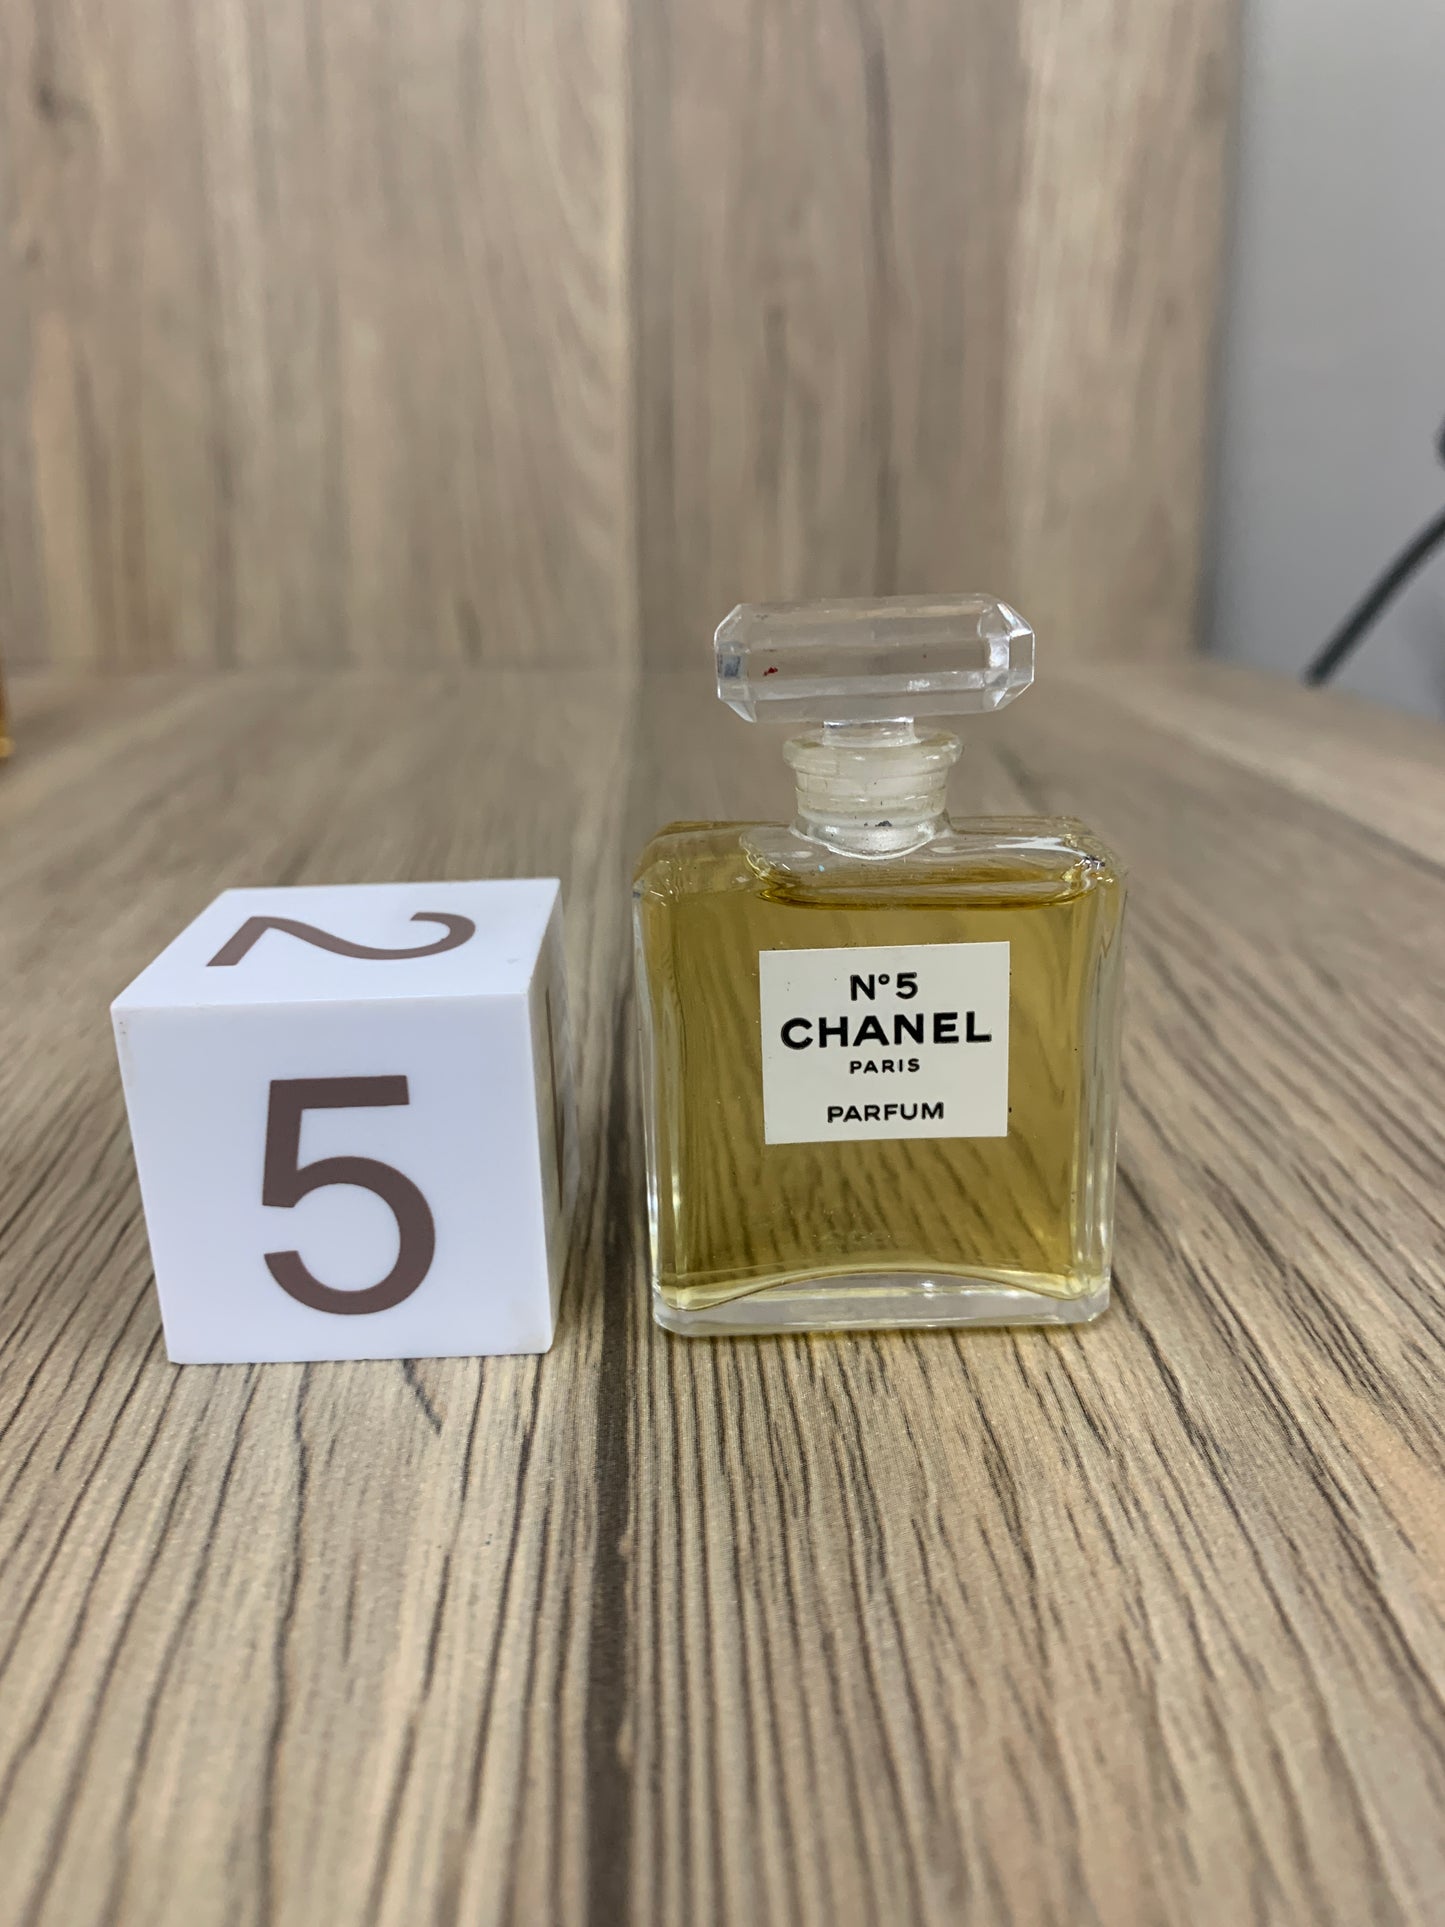 Used Chanel No. 5 7ml 1/4 oz Extrait Perfume Parfum - 4AUG22